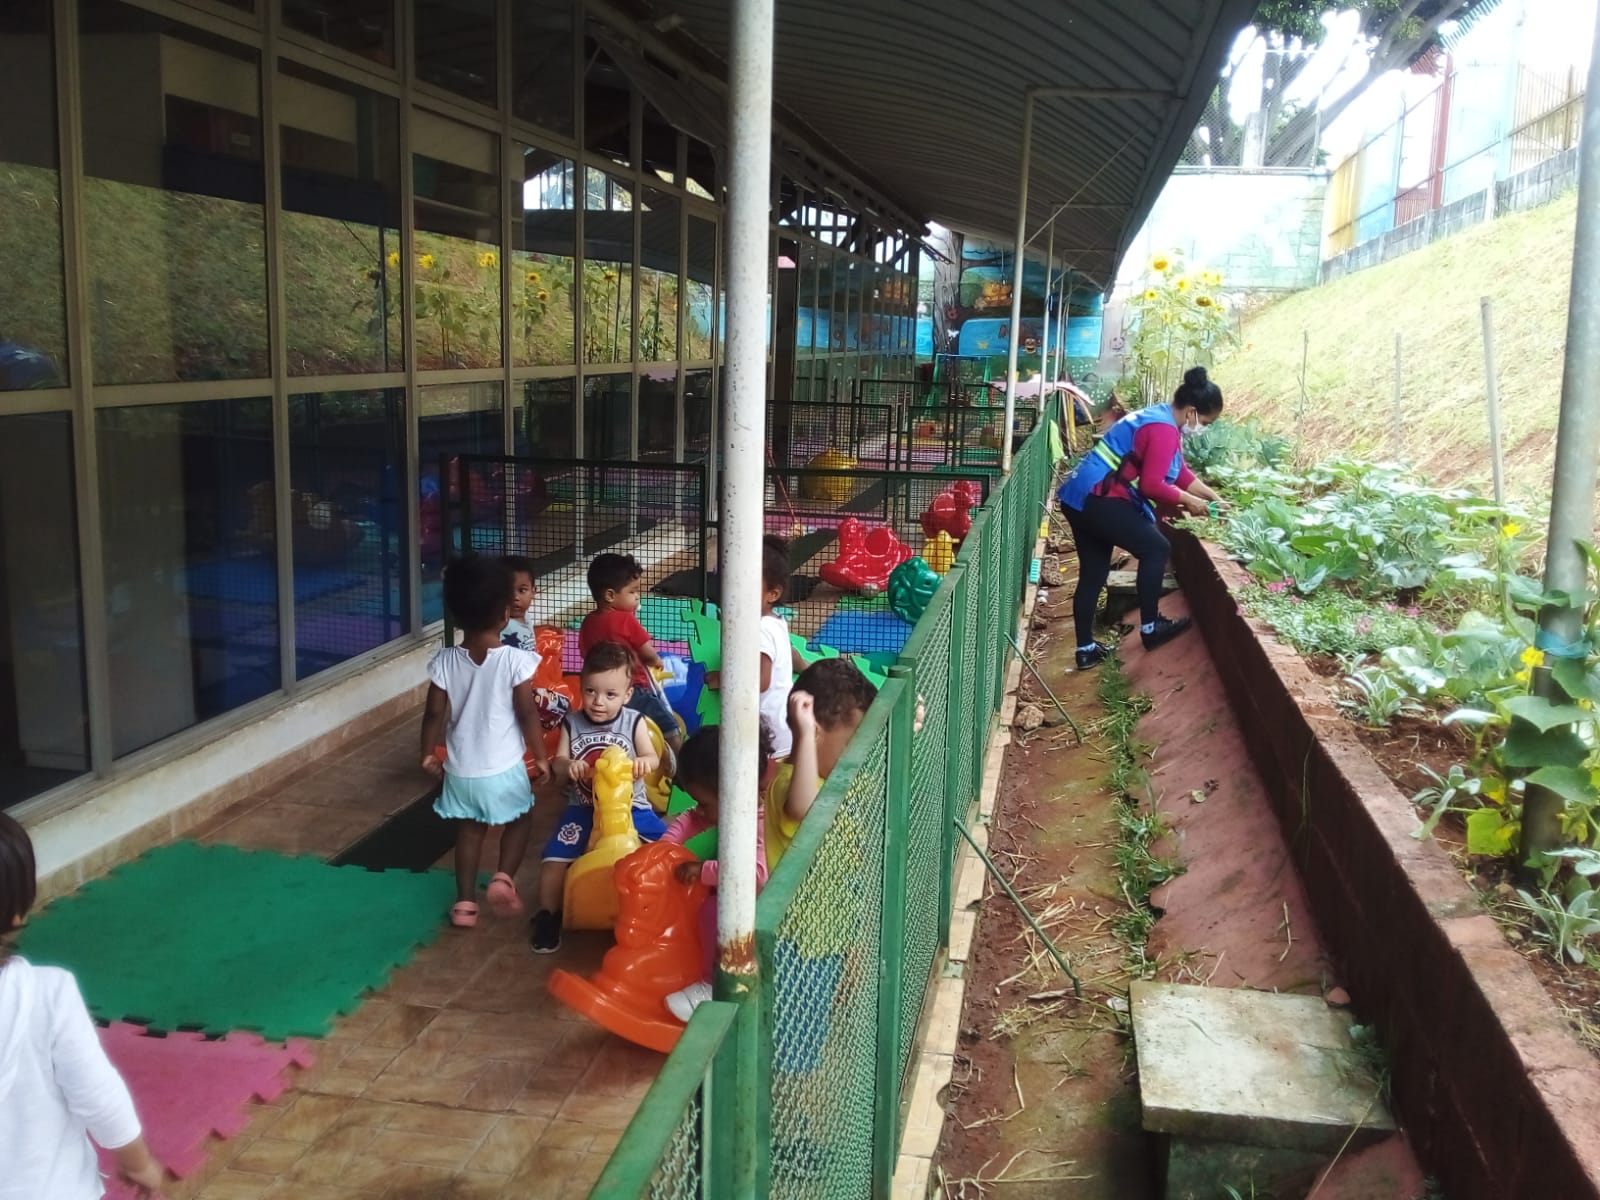 A foto mostra, do lado esquerdo, um grupo de crianças pequenas brincando em um pátio coberto e cercado; à direita, do lado de fora, uma mulher vestindo um colete azul cuida de uma horta com várias espécies vegetais, plantada em um canteiro lateral